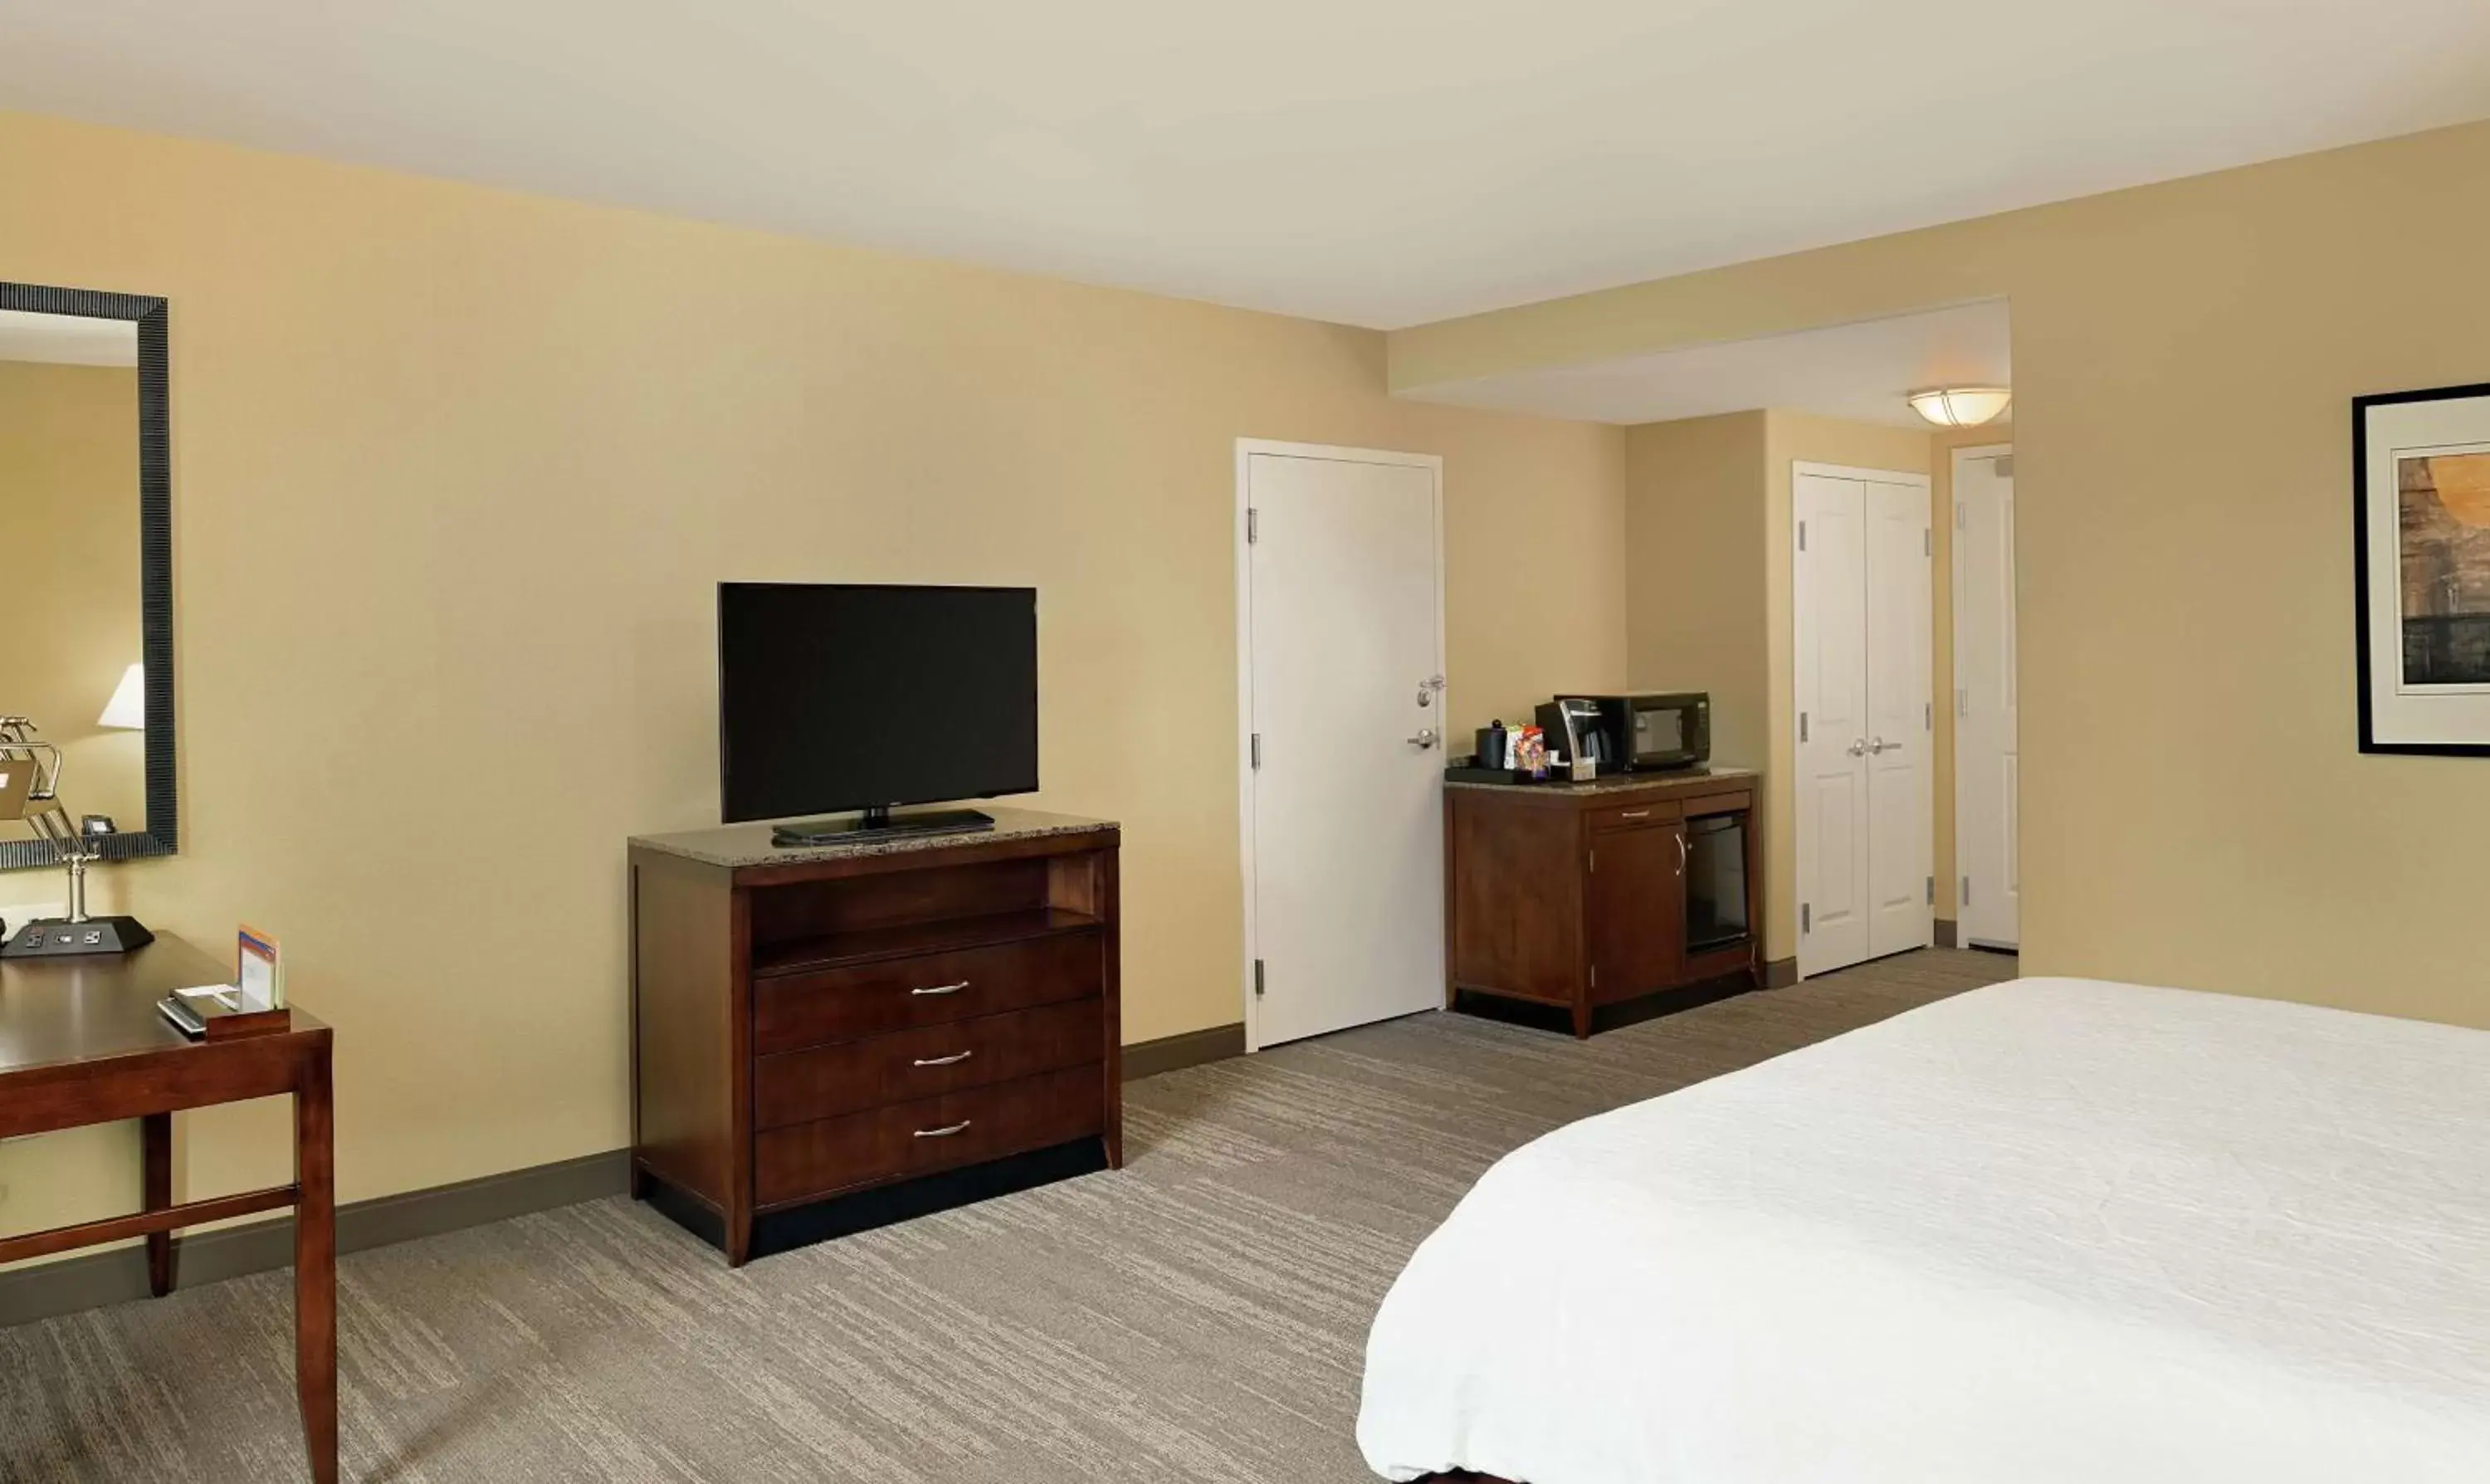 Bedroom, TV/Entertainment Center in Hilton Garden Inn Fontana